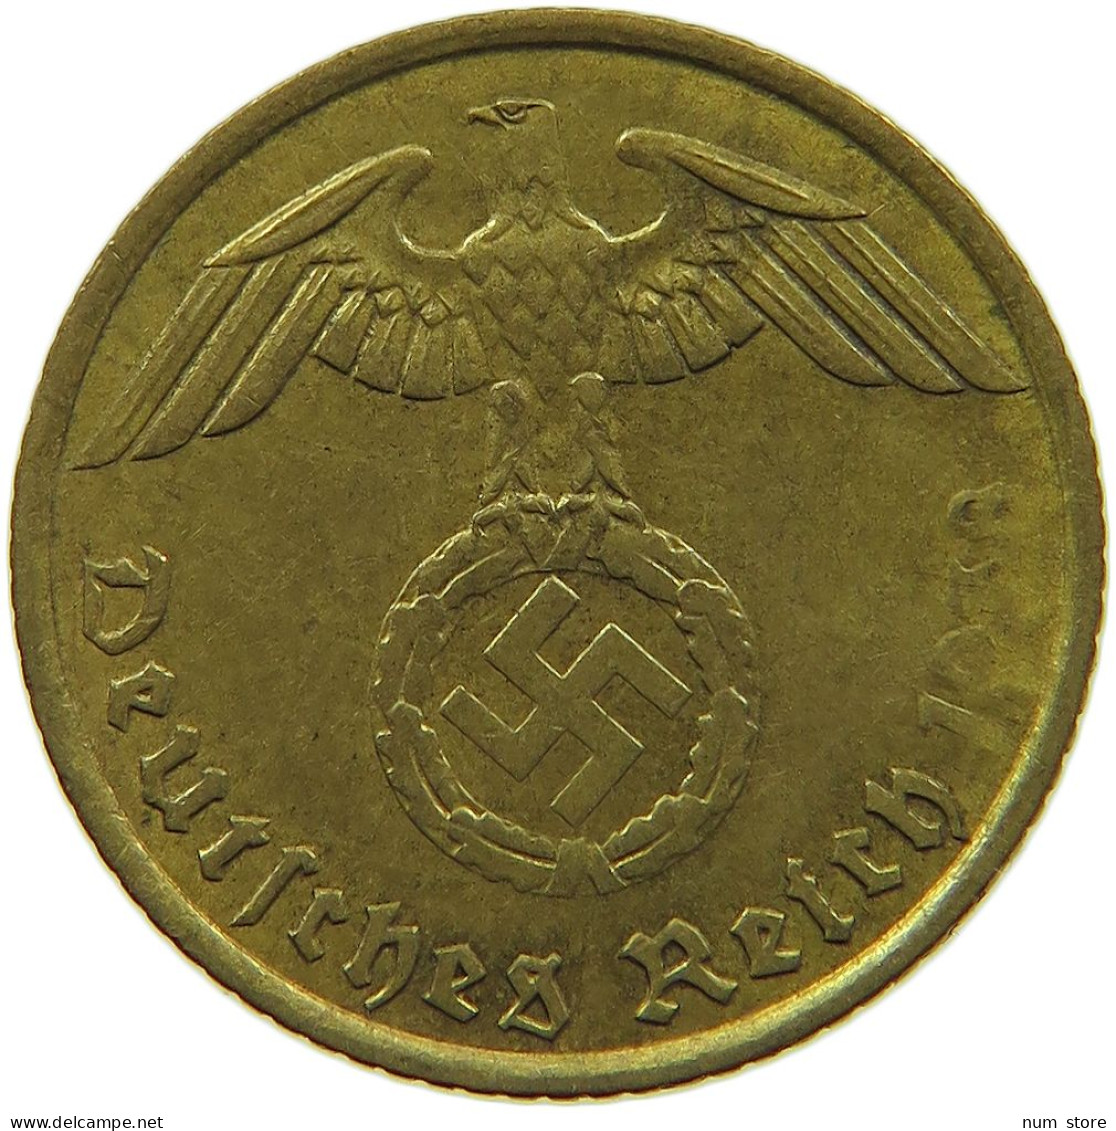 GERMANY 5 REICHSPFENNIG 1938 A WEAK STRUCK DATE #s091 0649 - 5 Reichspfennig